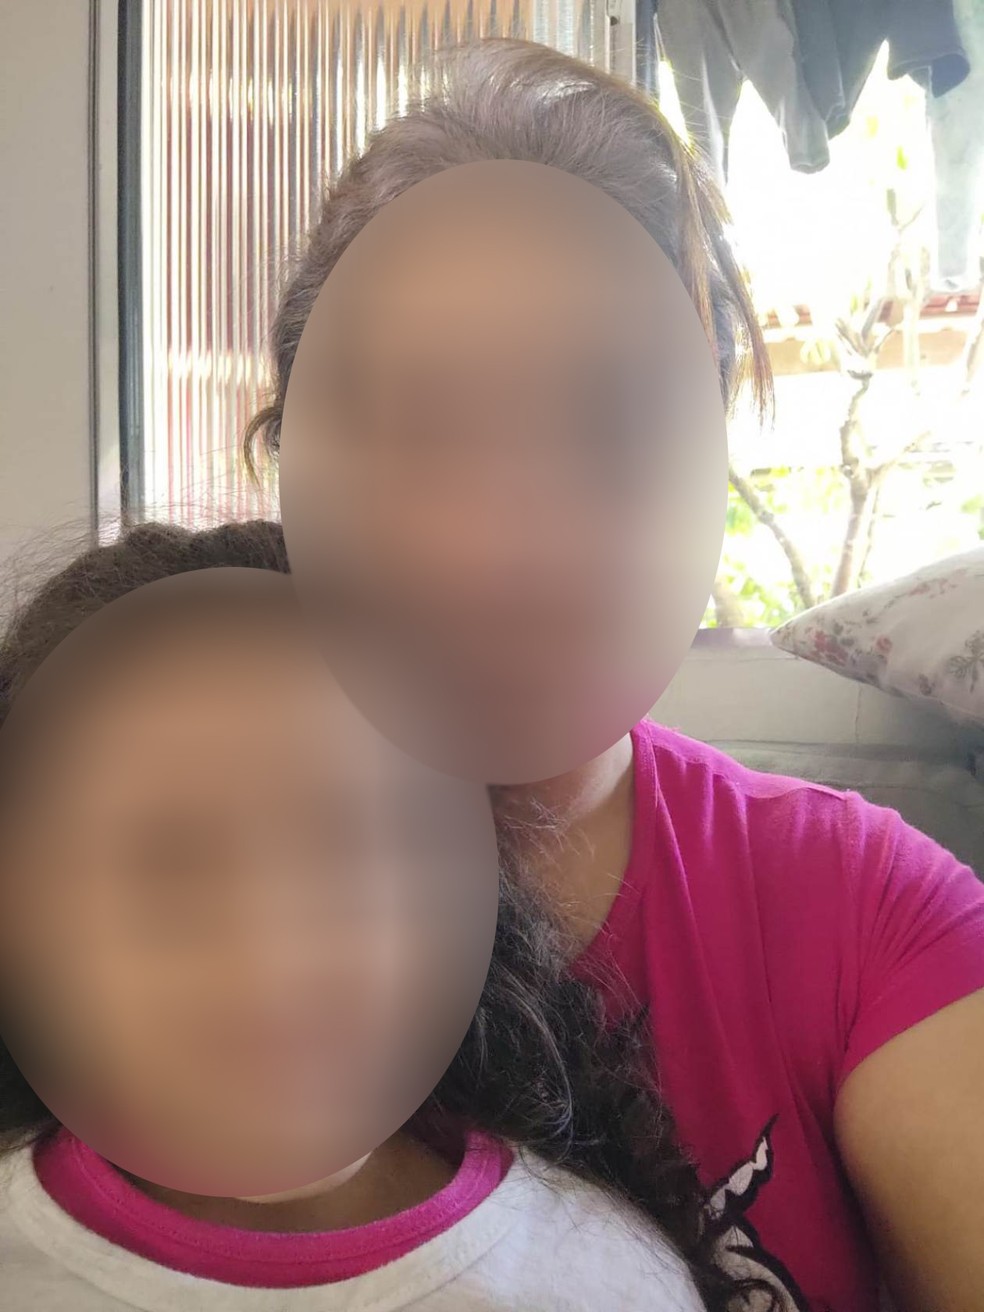 Mulher denuncia marido de amiga por estuprar a filha de 4 anos: 'mãe, ele lambeu meu peito', disse a menina — Foto: Arquivo Pessoal